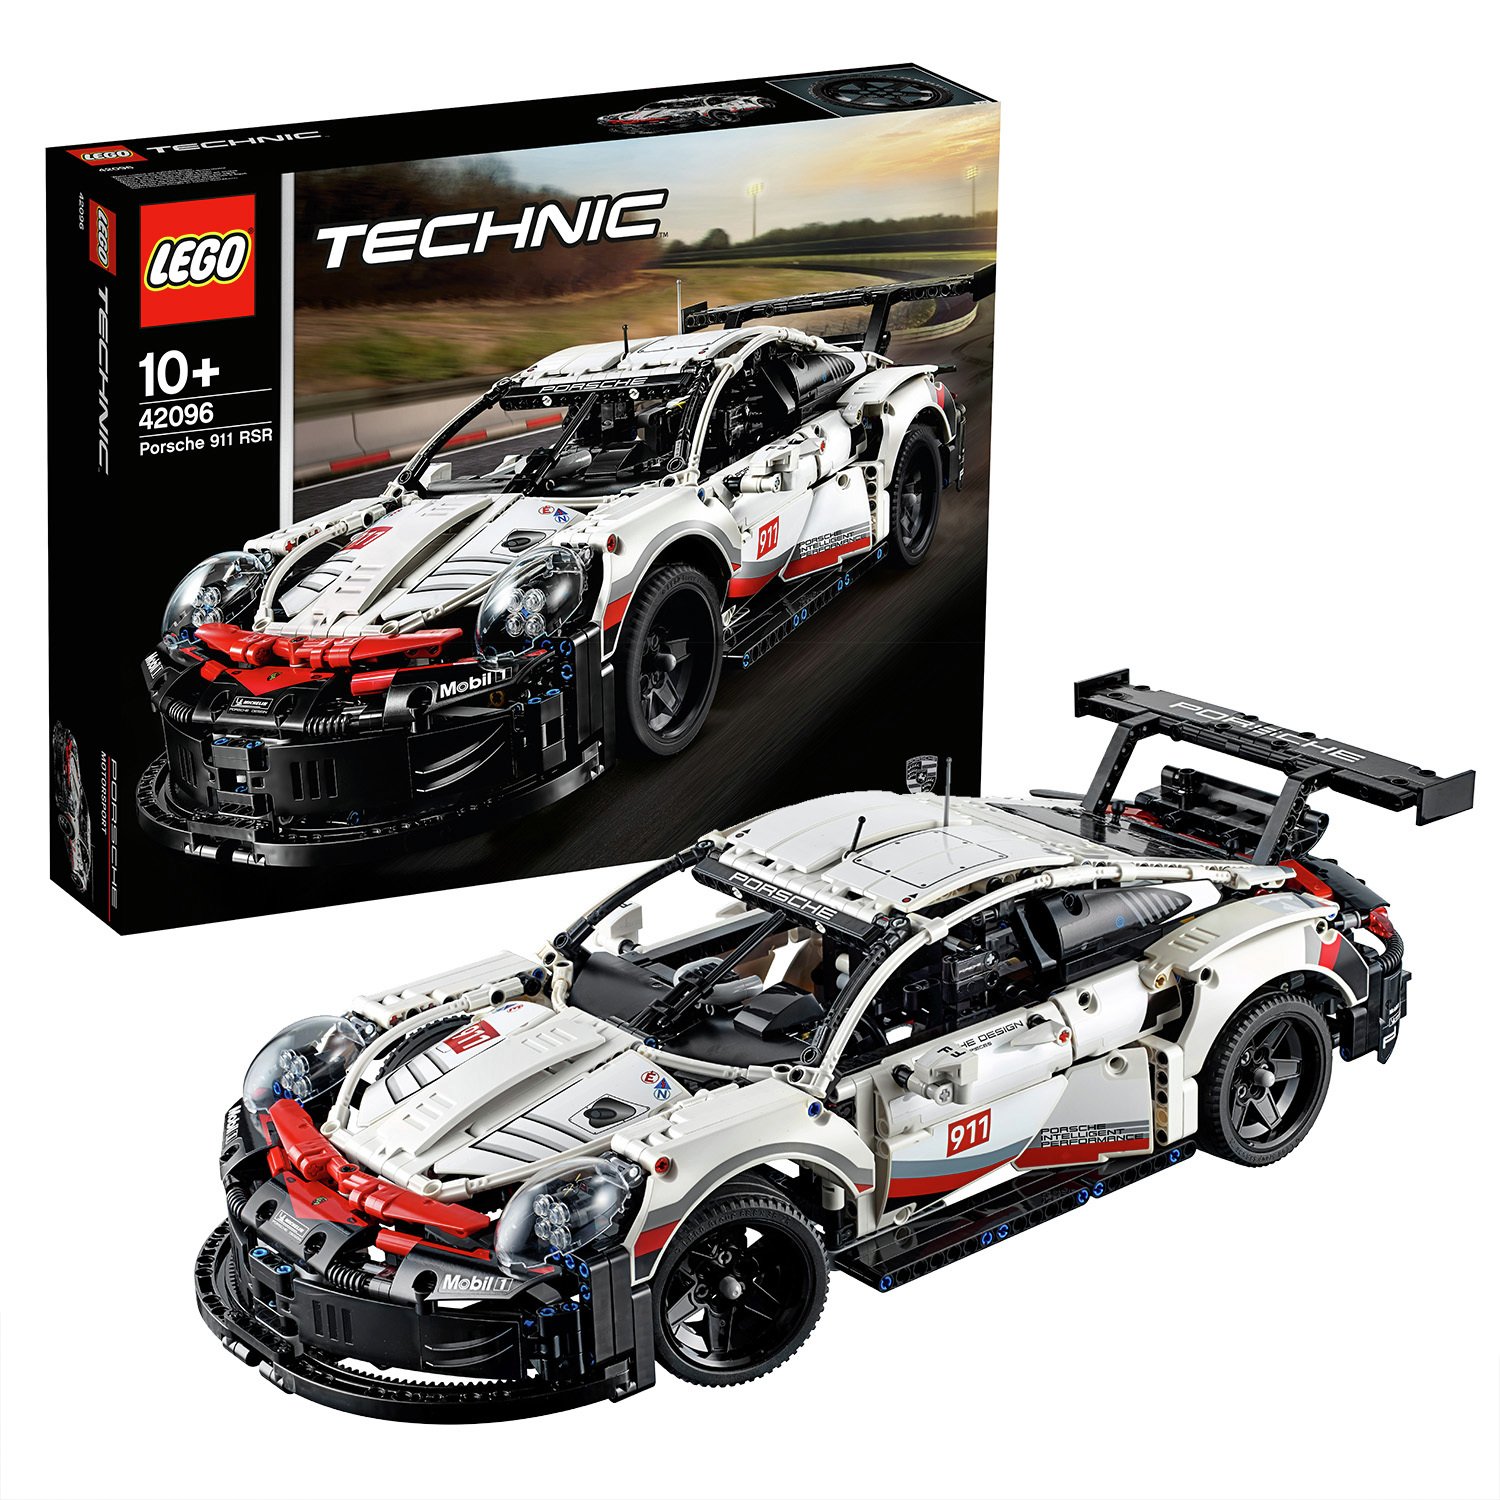 Buy LEGO Technic Porsche 911 RSR Car 